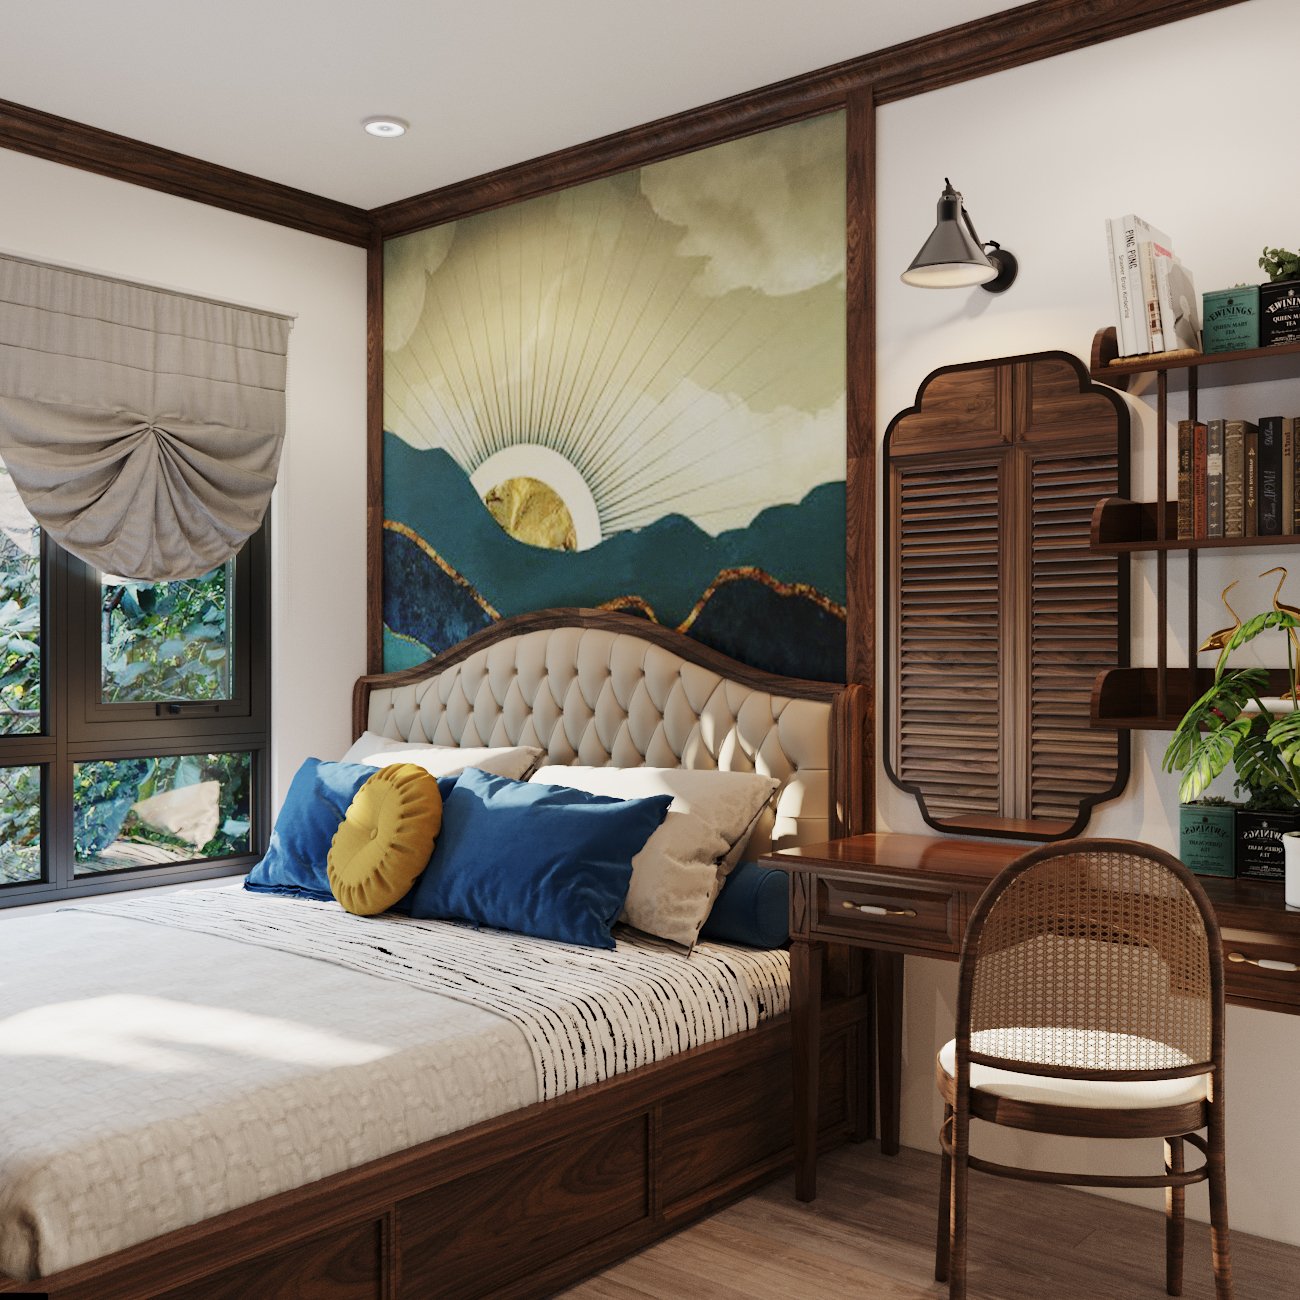 Thiết kế phòng ngủ master gây ấn tượng bởi tranh tường đầu giường mô tả cảnh mặt trời khuất núi "huyền thoại". Căn phòng tích hợp thêm góc làm việc gọn gàng.